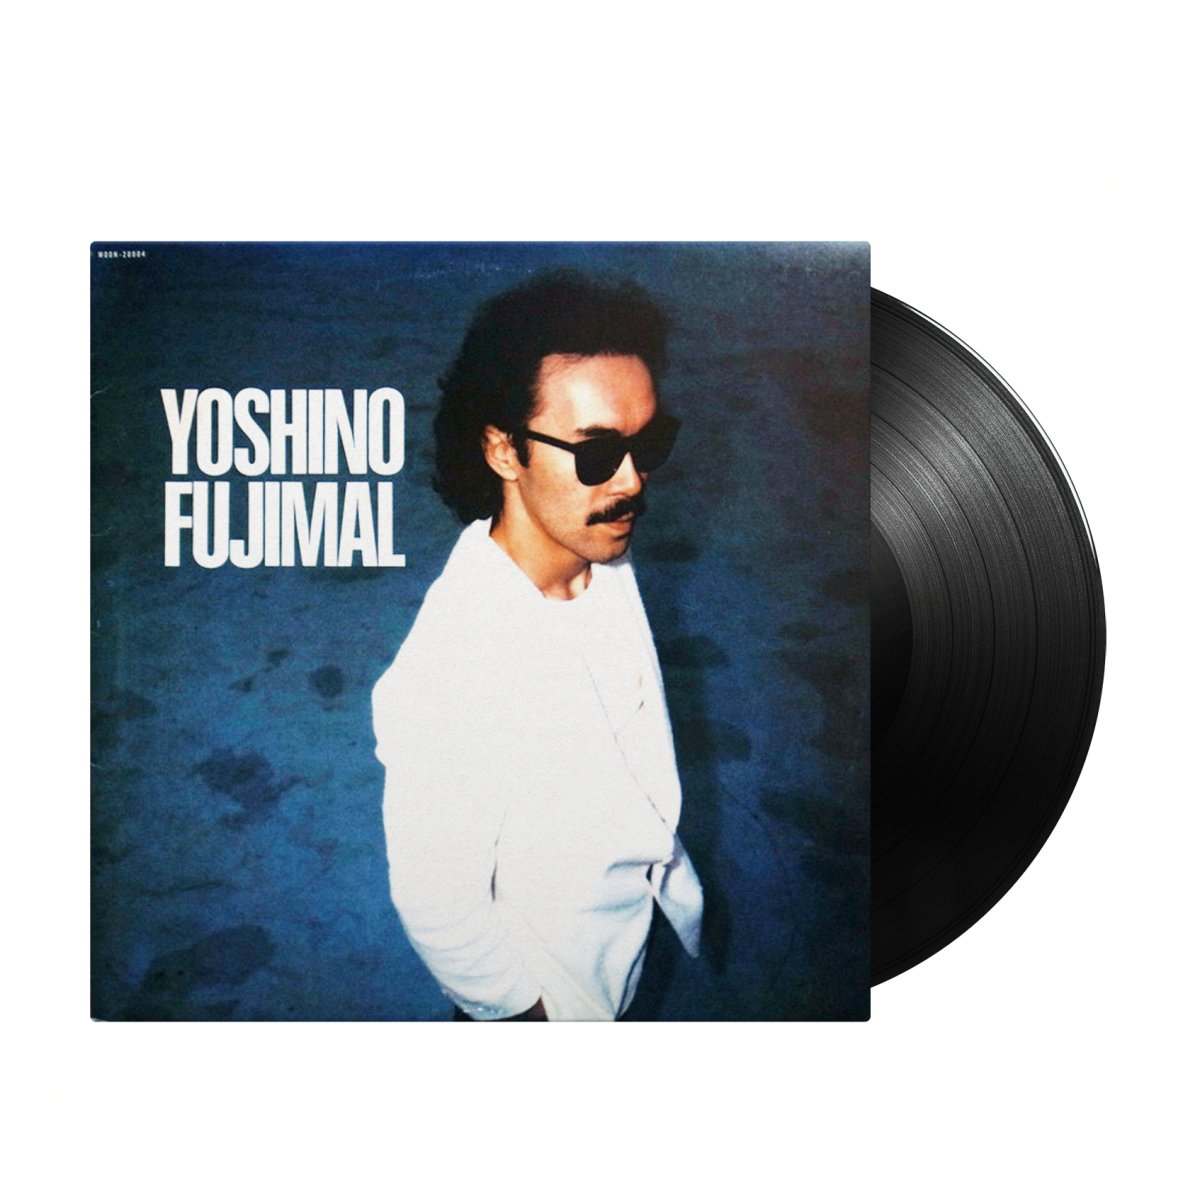 Yoshino Fujimal - Yoshino Fujimal (Japan Import) - Inner Ocean Records